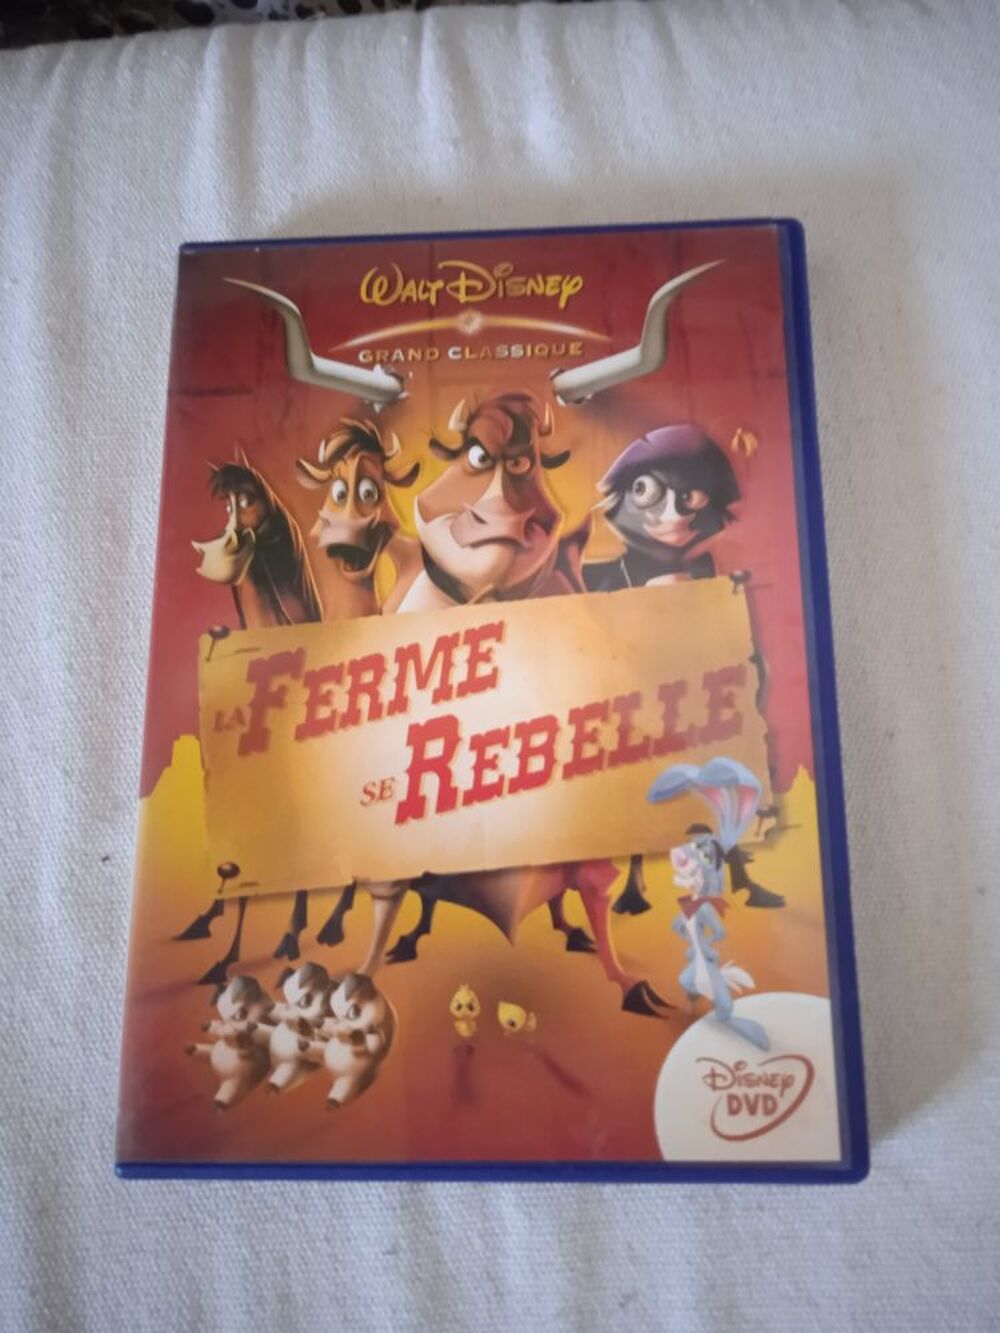 DVD La Ferme se rebelle
2005
Excellent &eacute;tat
En Fran&ccedil;ais
M DVD et blu-ray